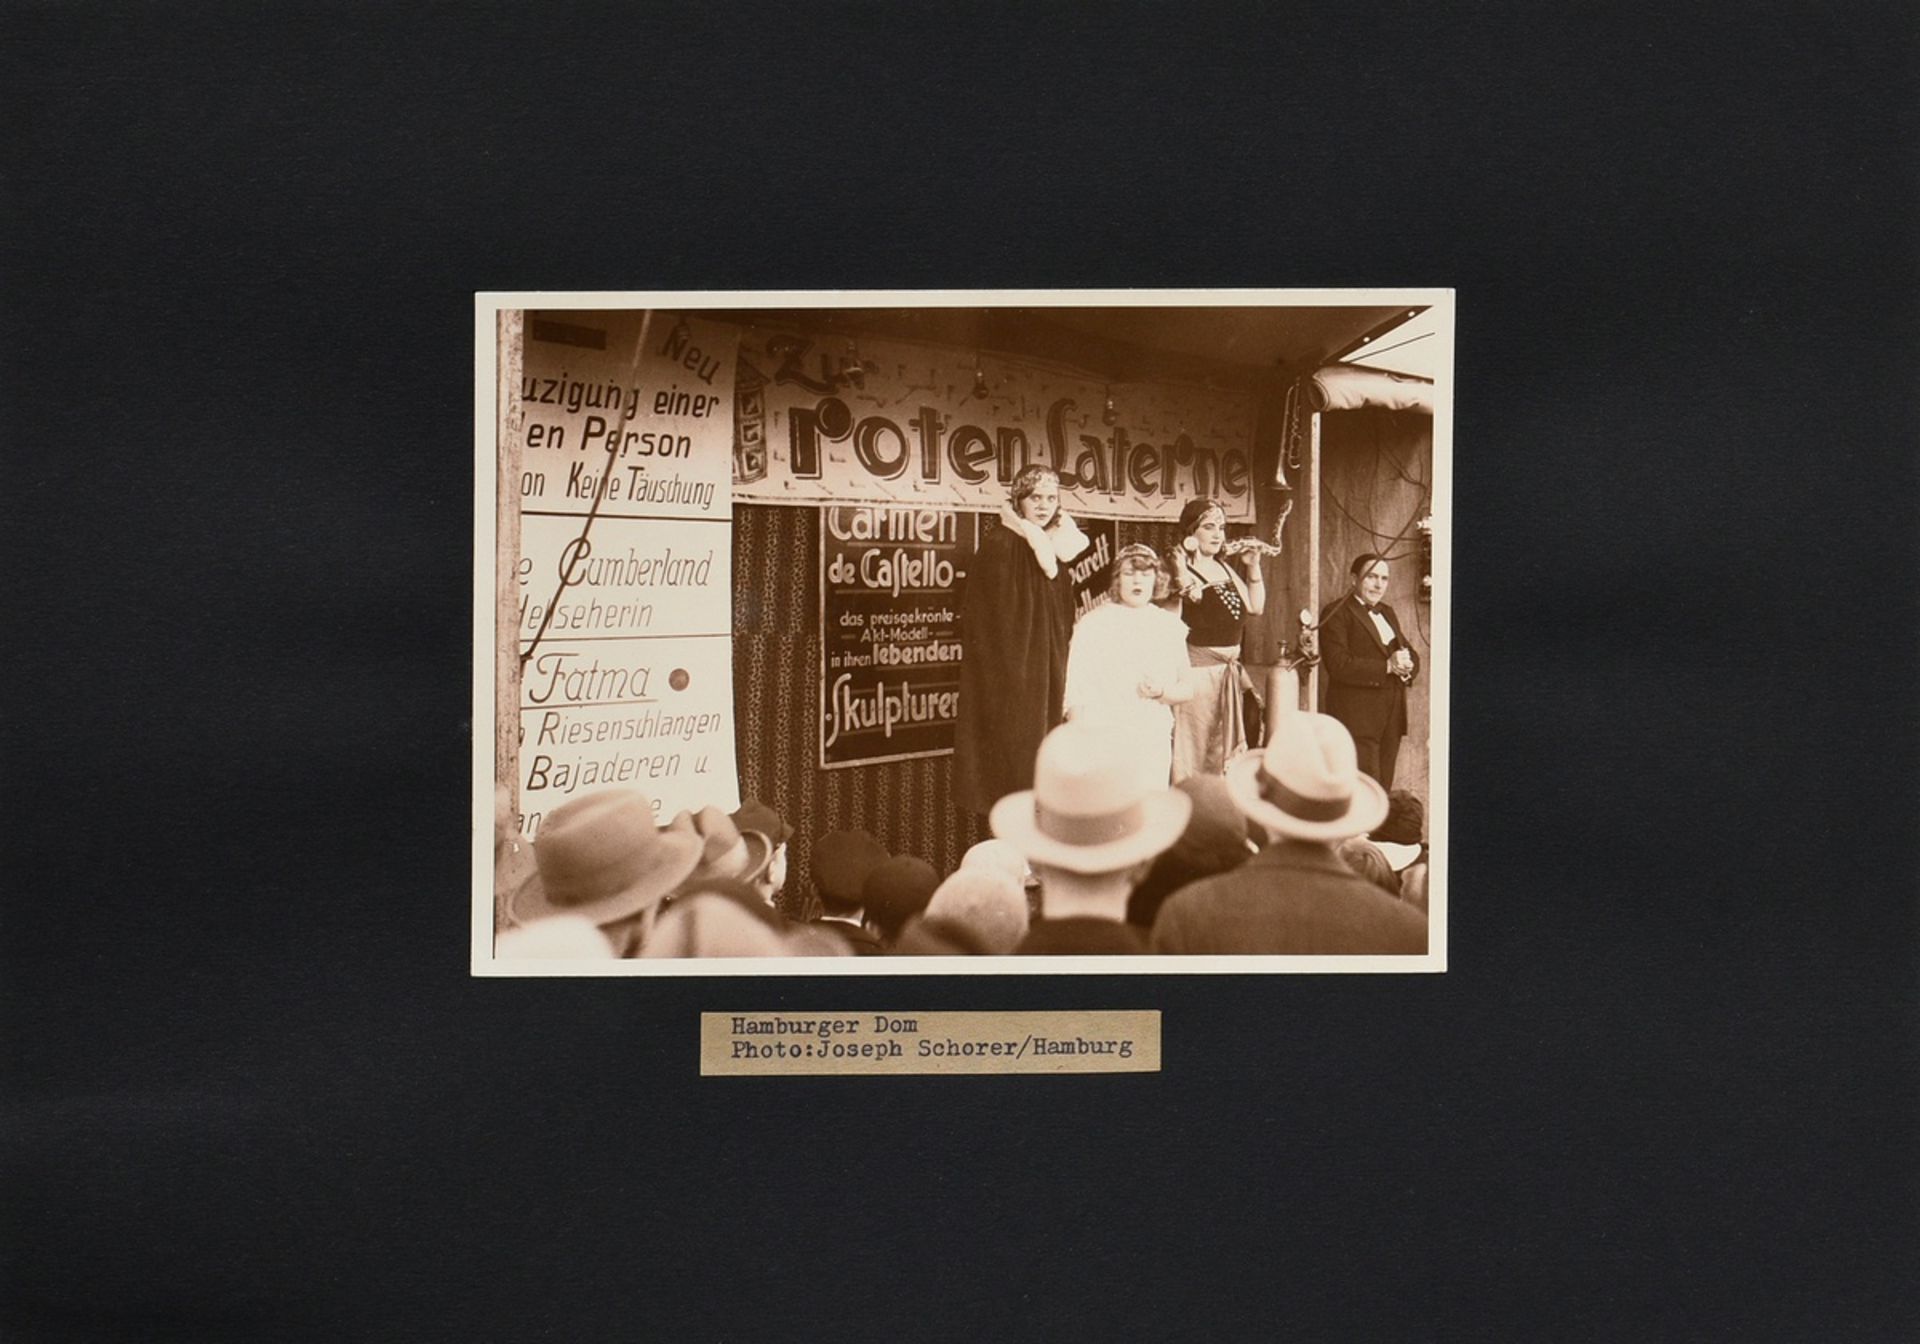 Schorer, Joseph (1894-1946) "Hamburger Dom", Fotografie, auf Karton montiert, u. bez., verso gestem - Bild 2 aus 2